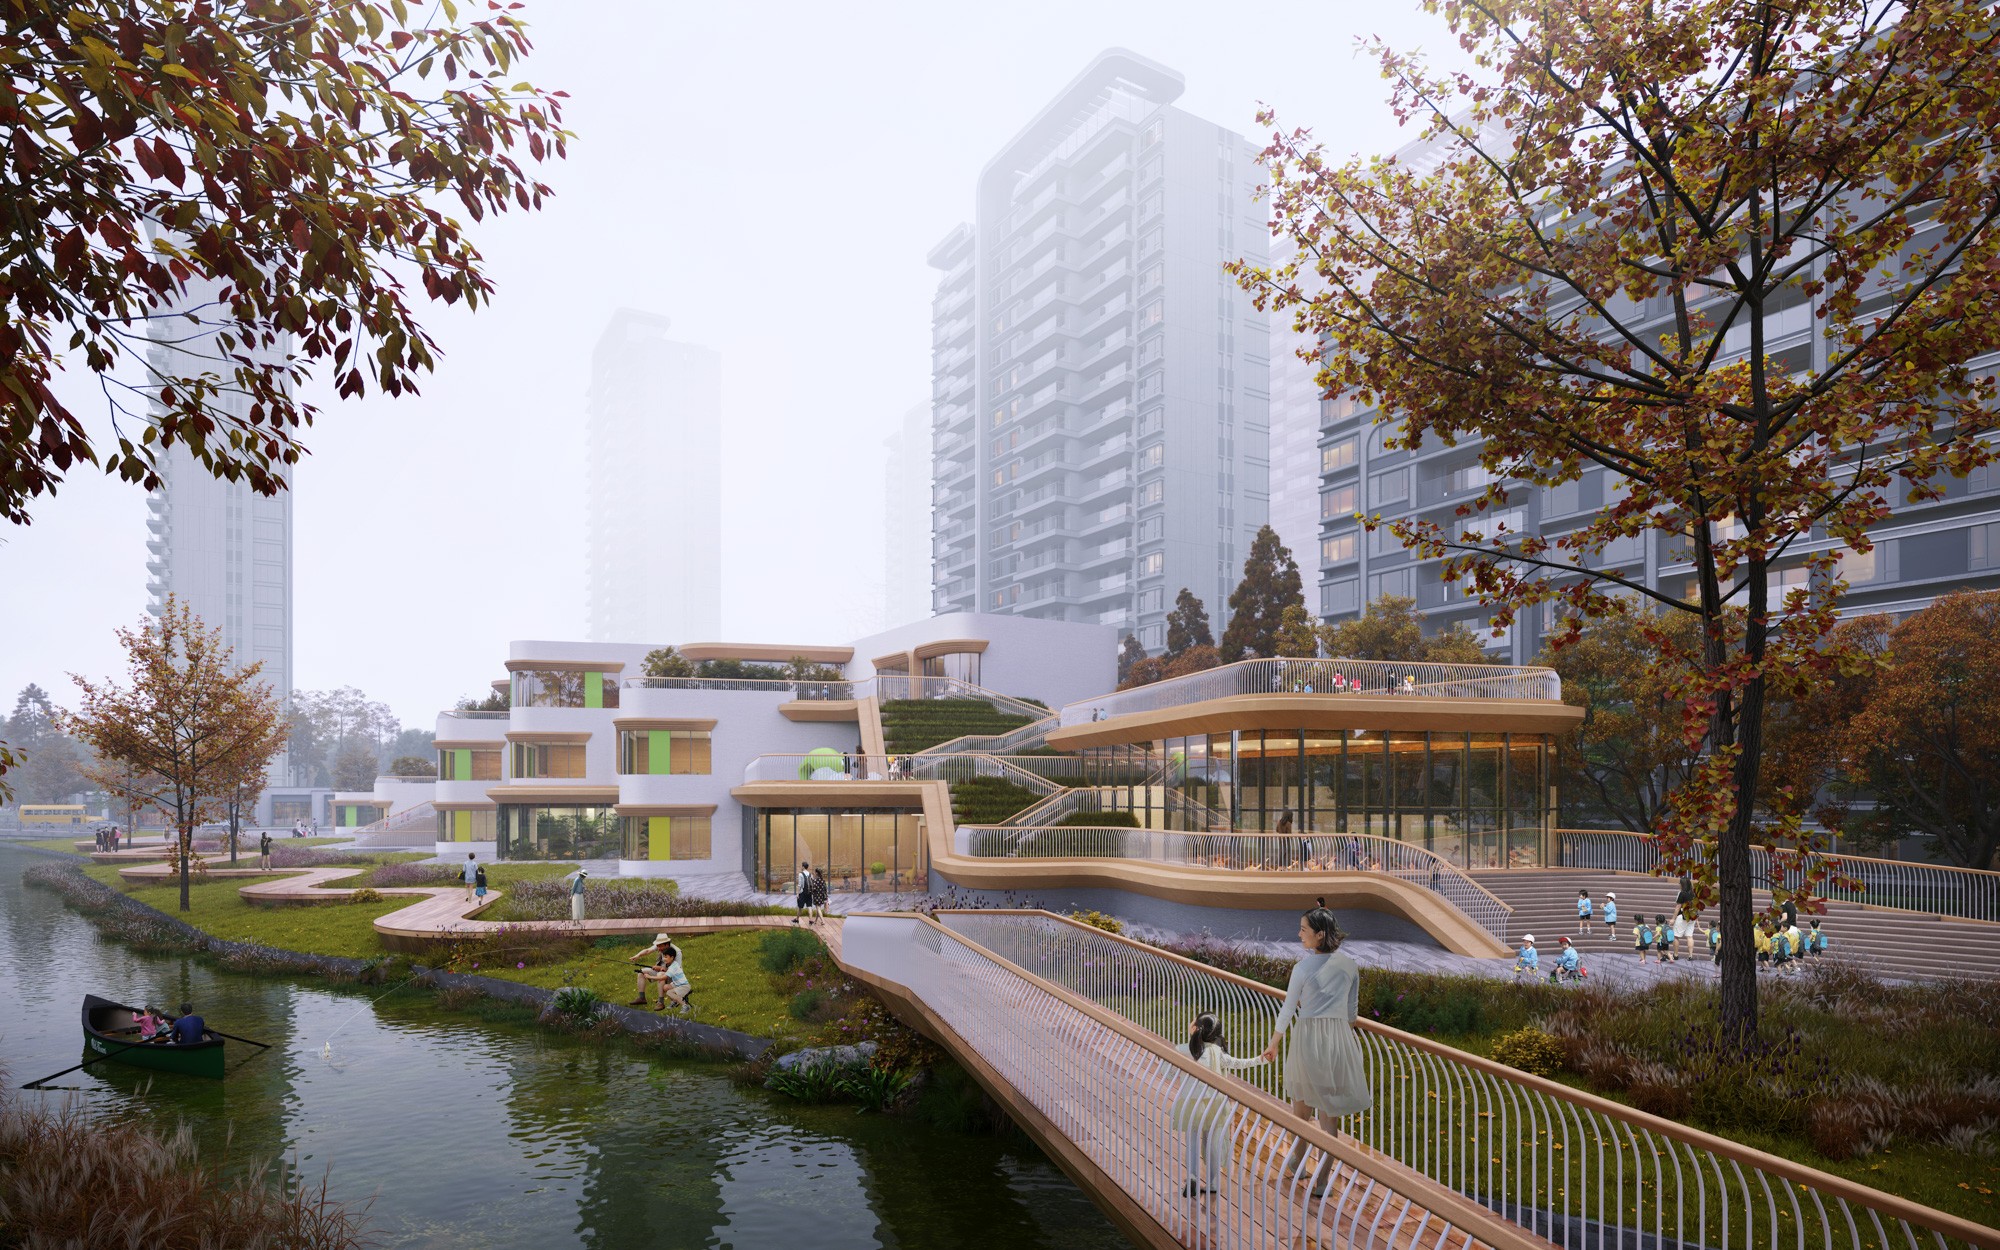 渔里未来社区幼儿园 2 ©上海曼景建筑设计事务所